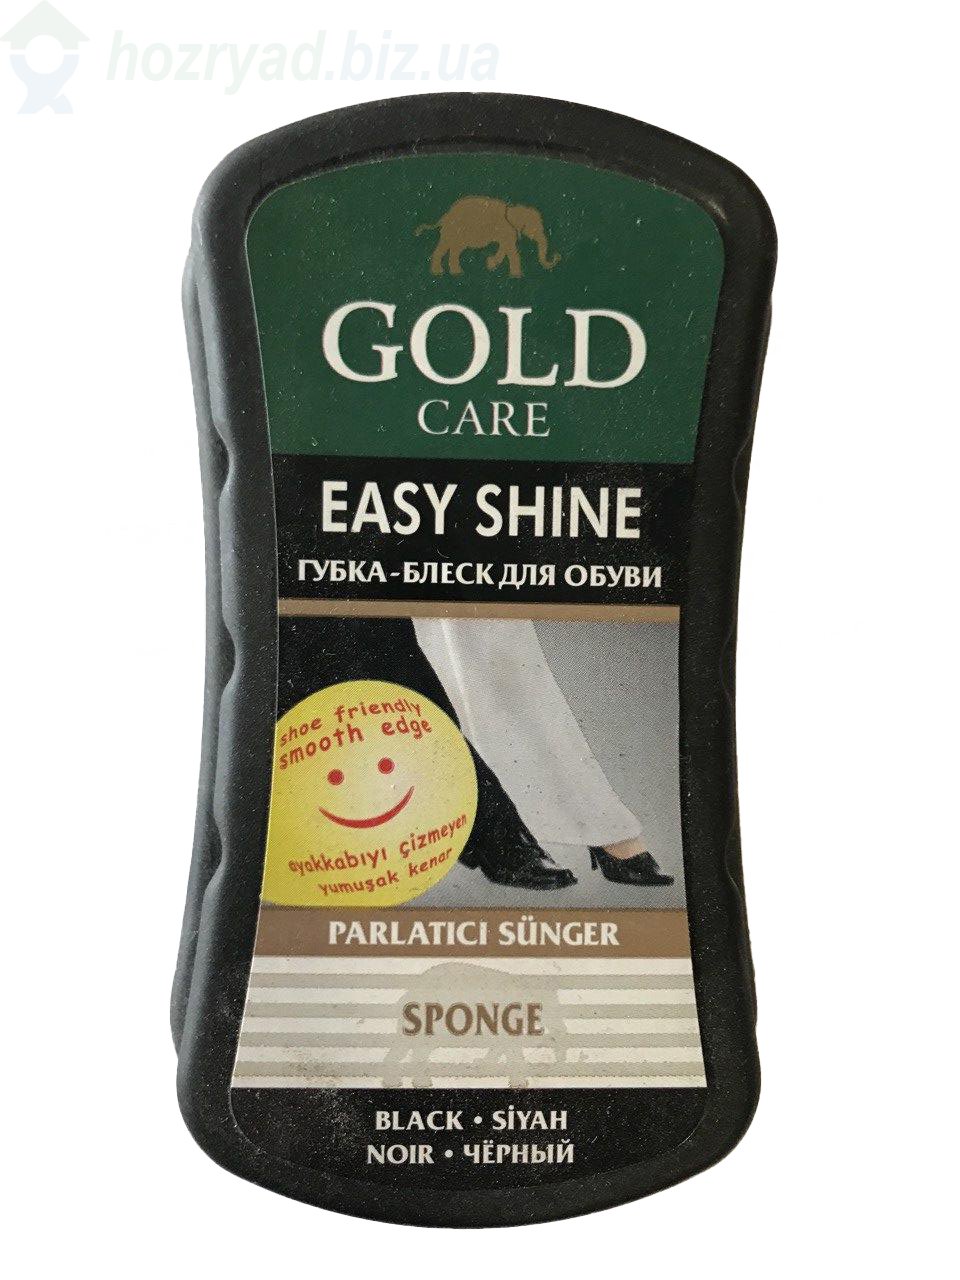     GOLD CARE Easy shine  (sponge) 8  